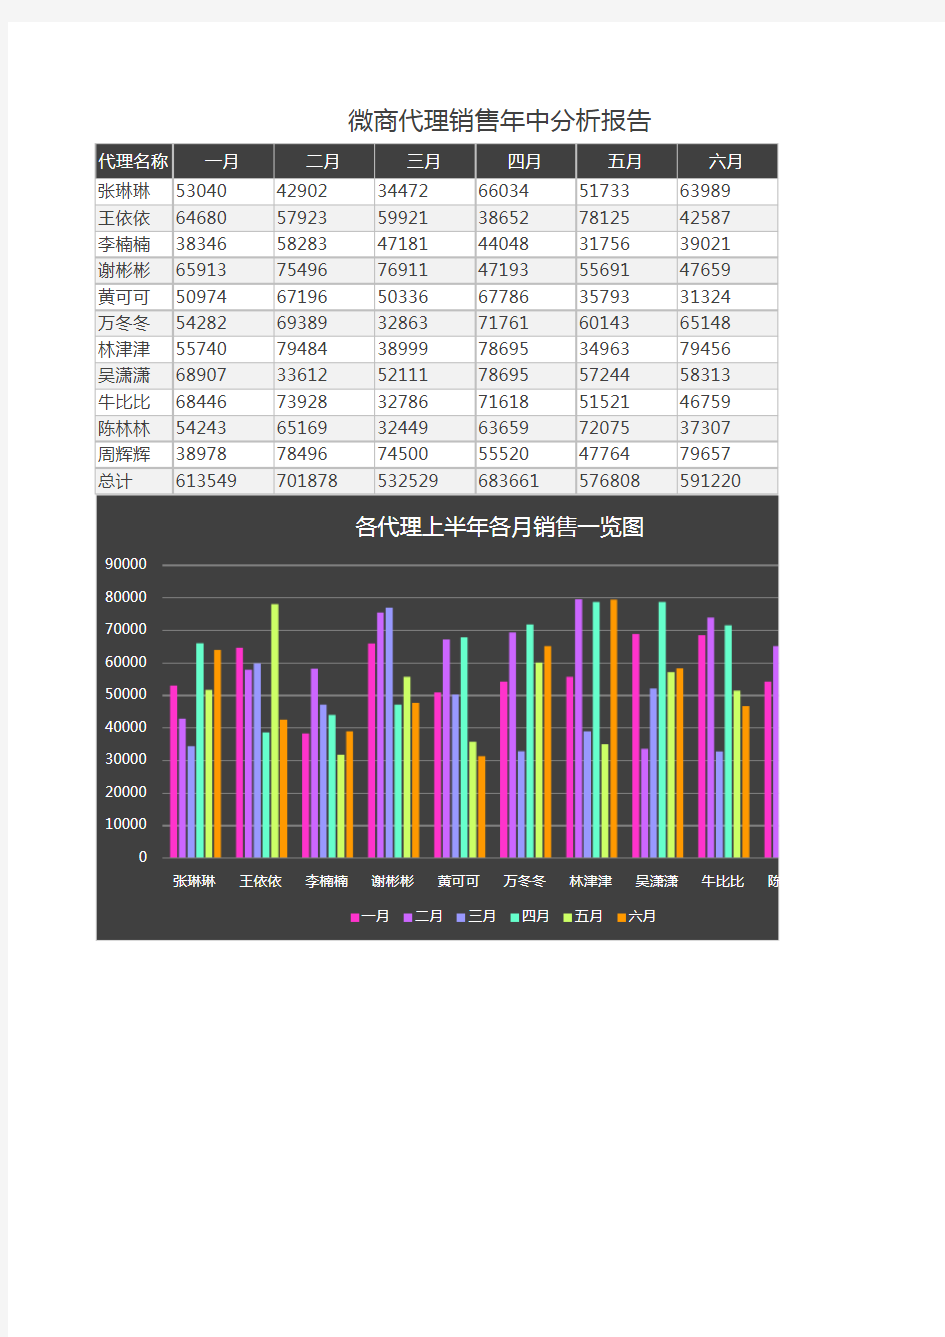 中国微商代理销售年中分析统计报告